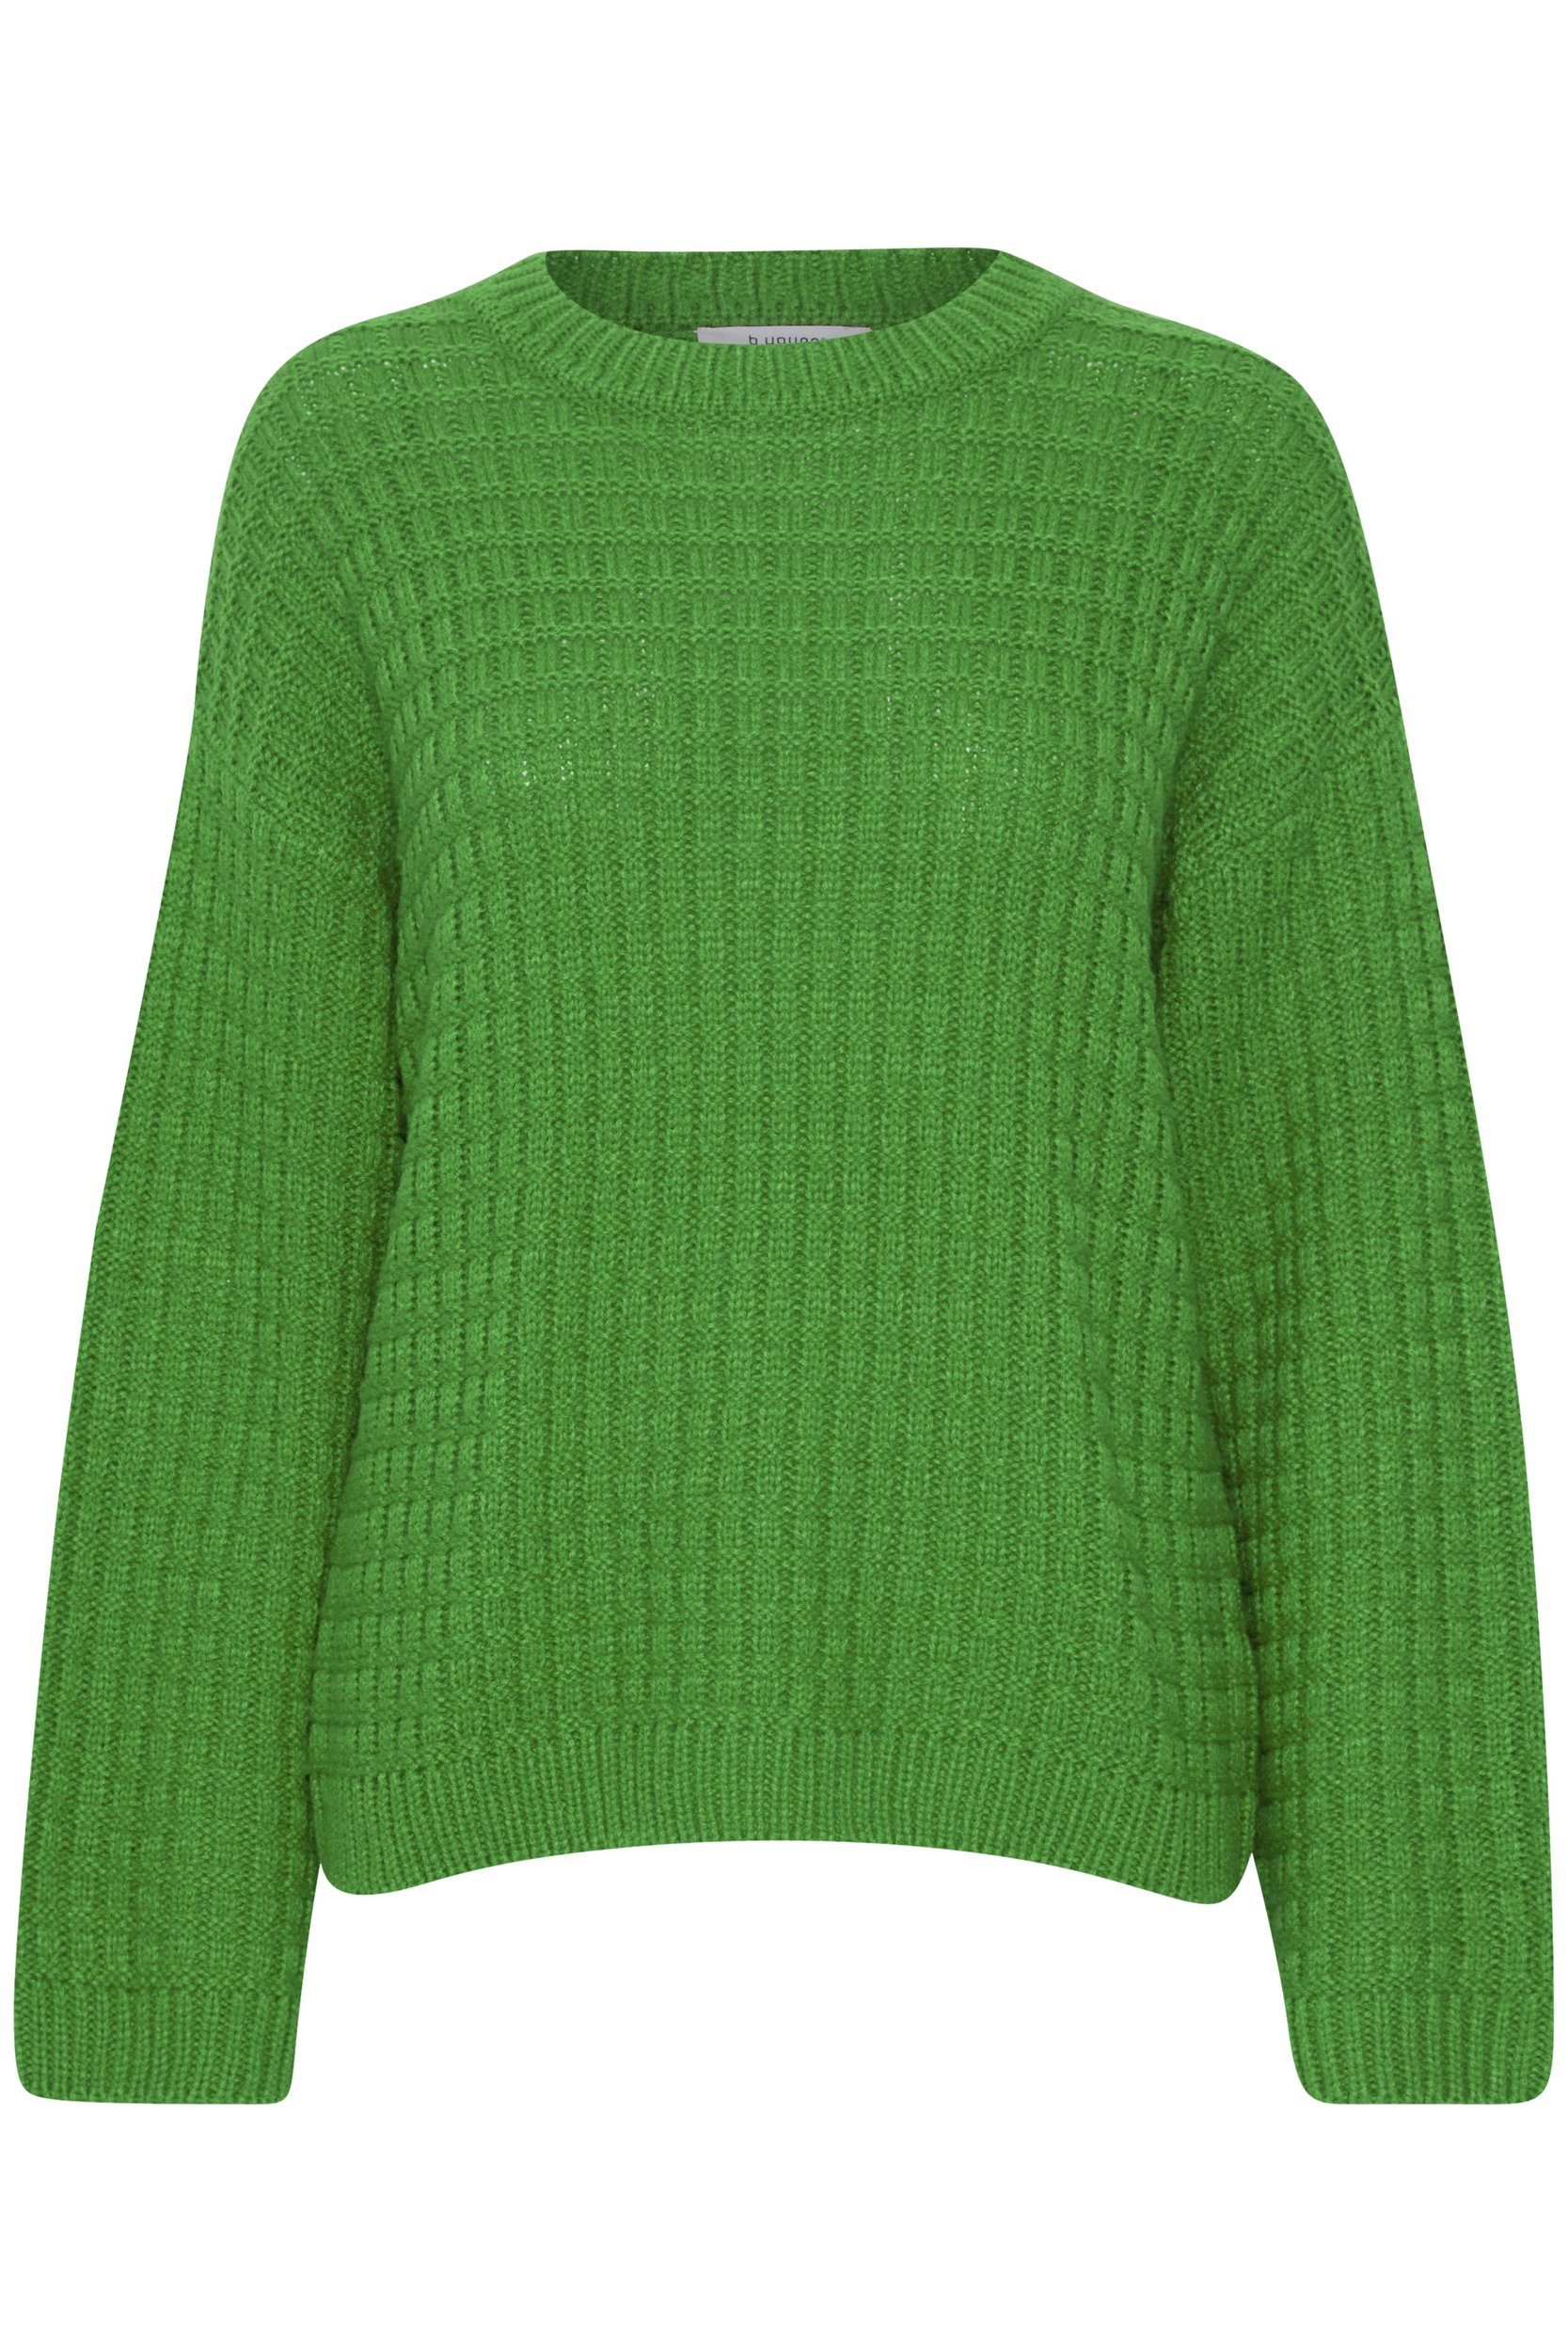 b.young Strickpullover Grobstrick Pullover Sweater mit Abgesetzten Schultern 6664 in Grün